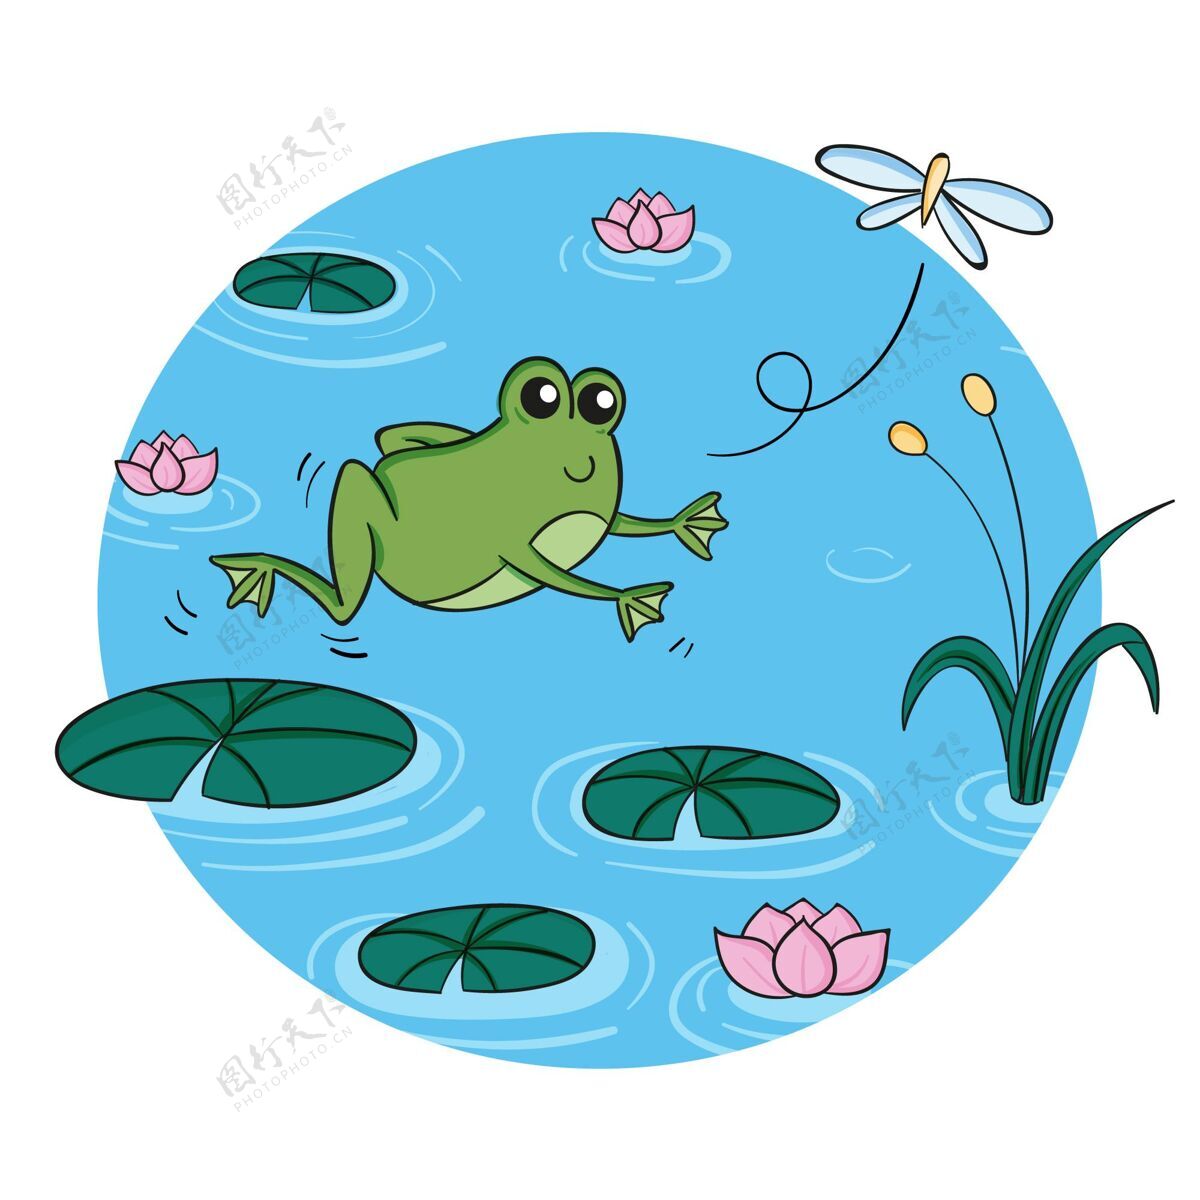 孩子一样手绘青蛙插图青蛙手绘可爱